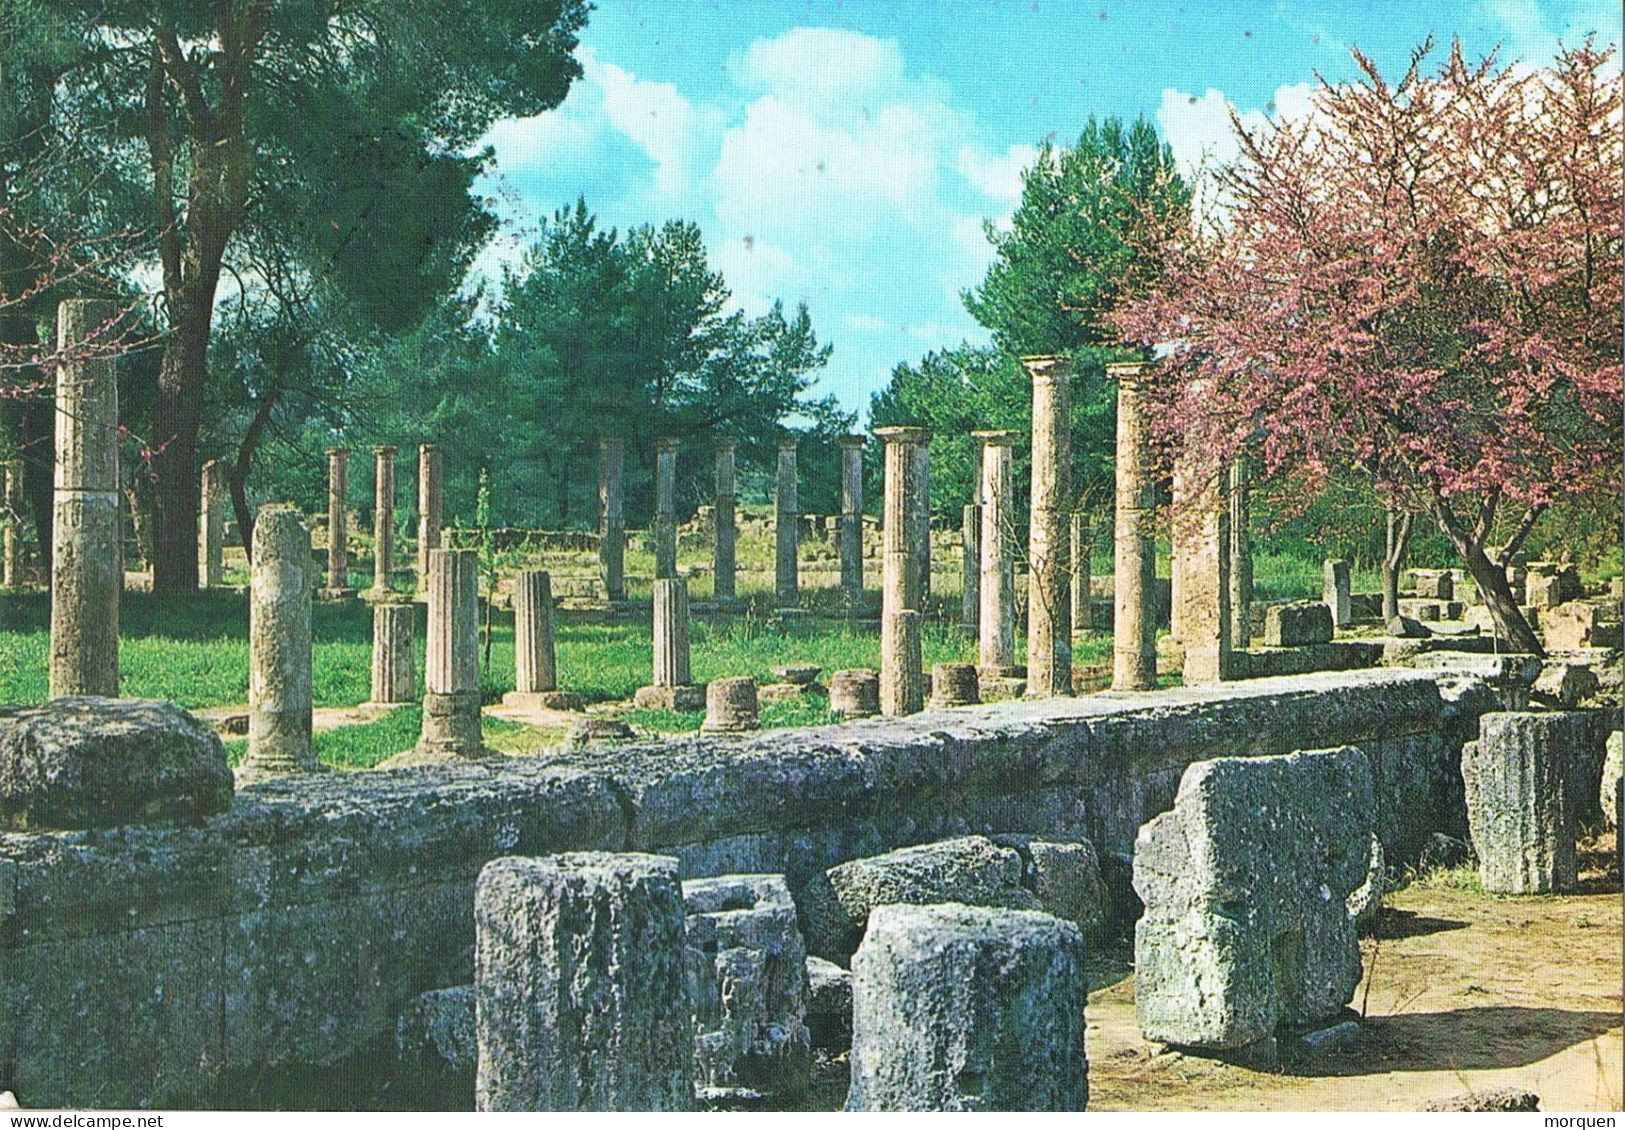 52946. Postal Aerea OLYMPIA (grecia)  2000, Vista Ruinas De La Palestra De Olympia, Arqueologia - Briefe U. Dokumente